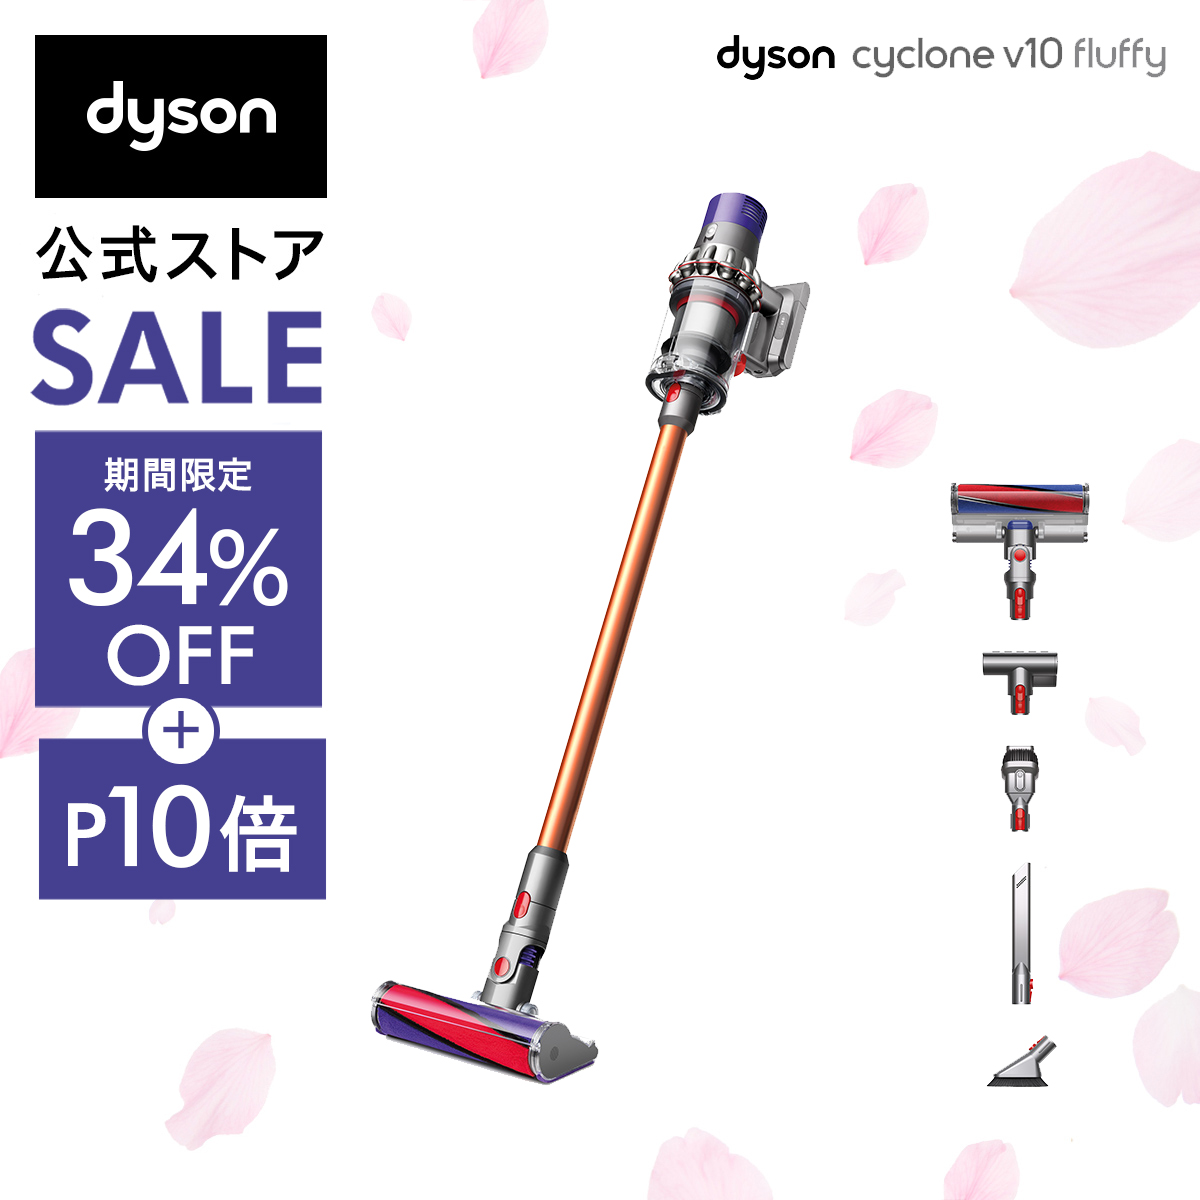 【楽天市場】【最軽量モデル】 ダイソン Dyson Micro Origin 